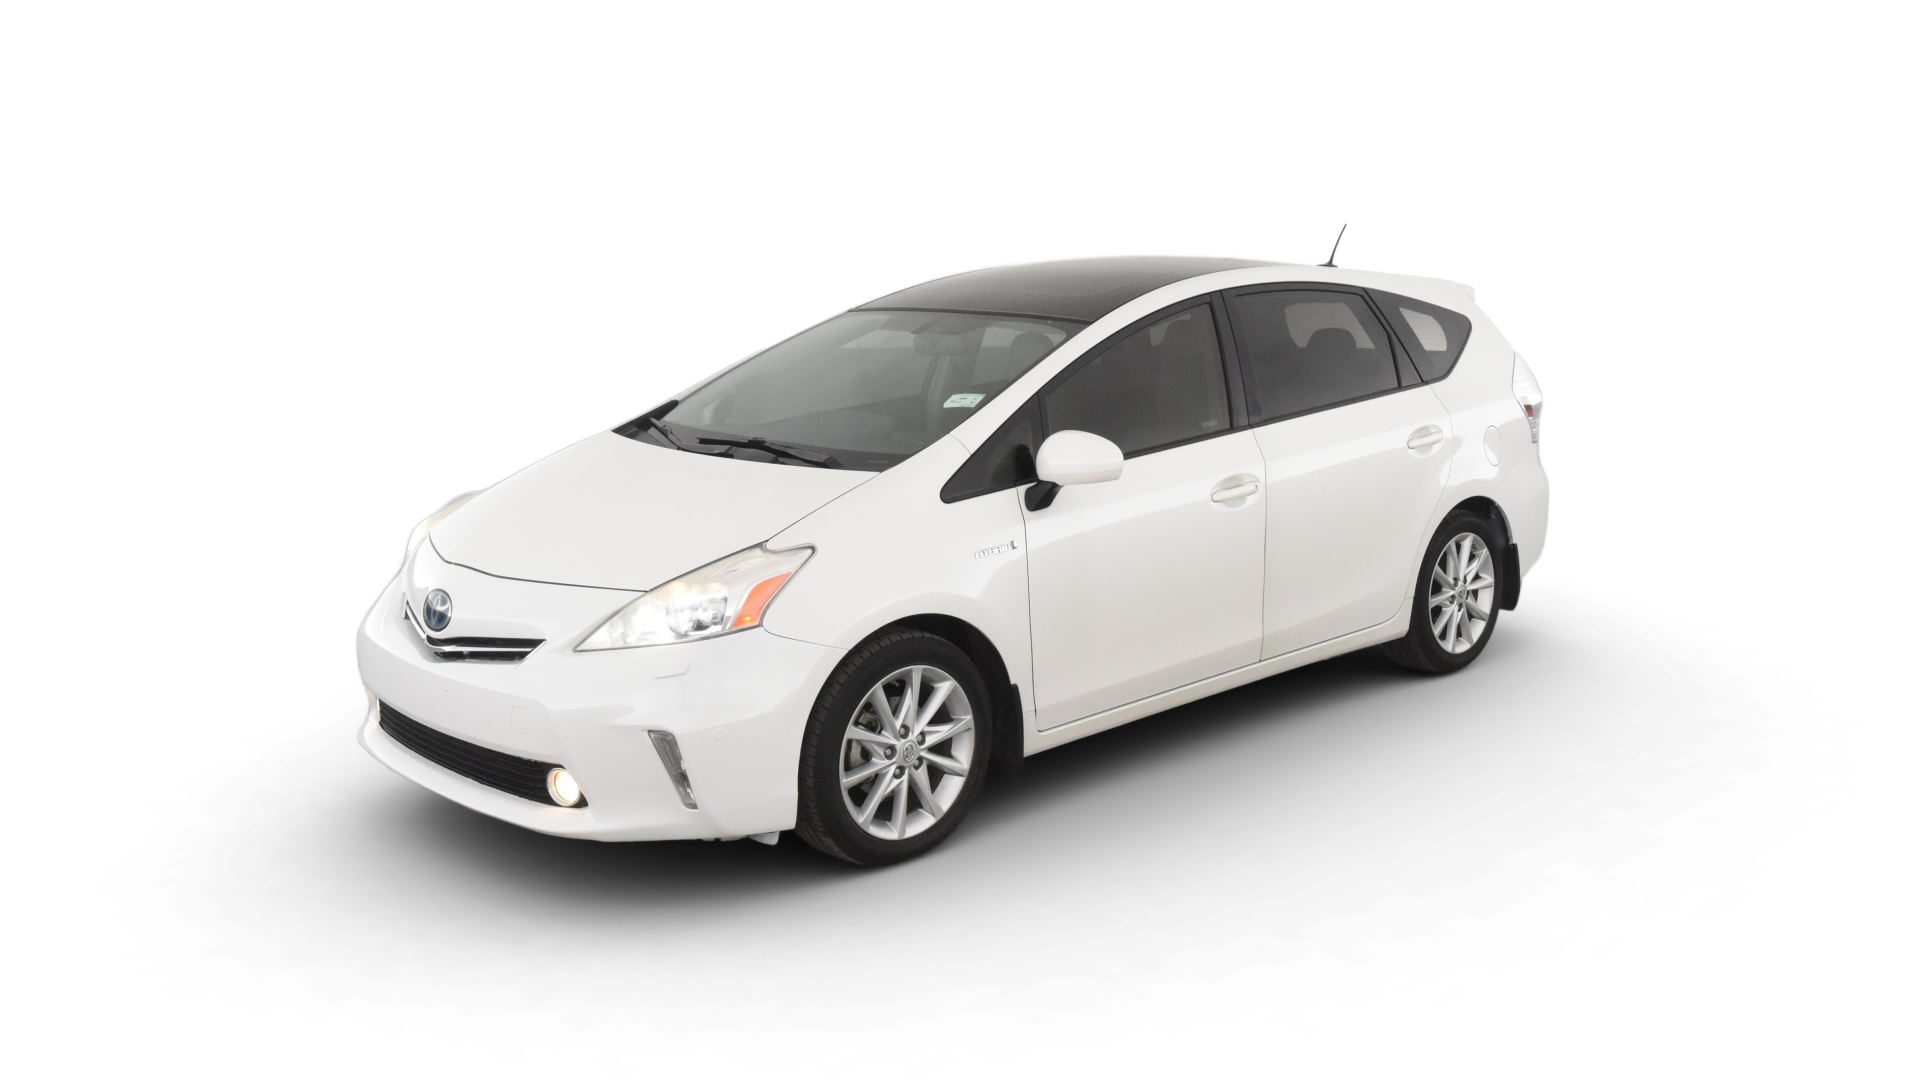 Toyota Prius v model image.